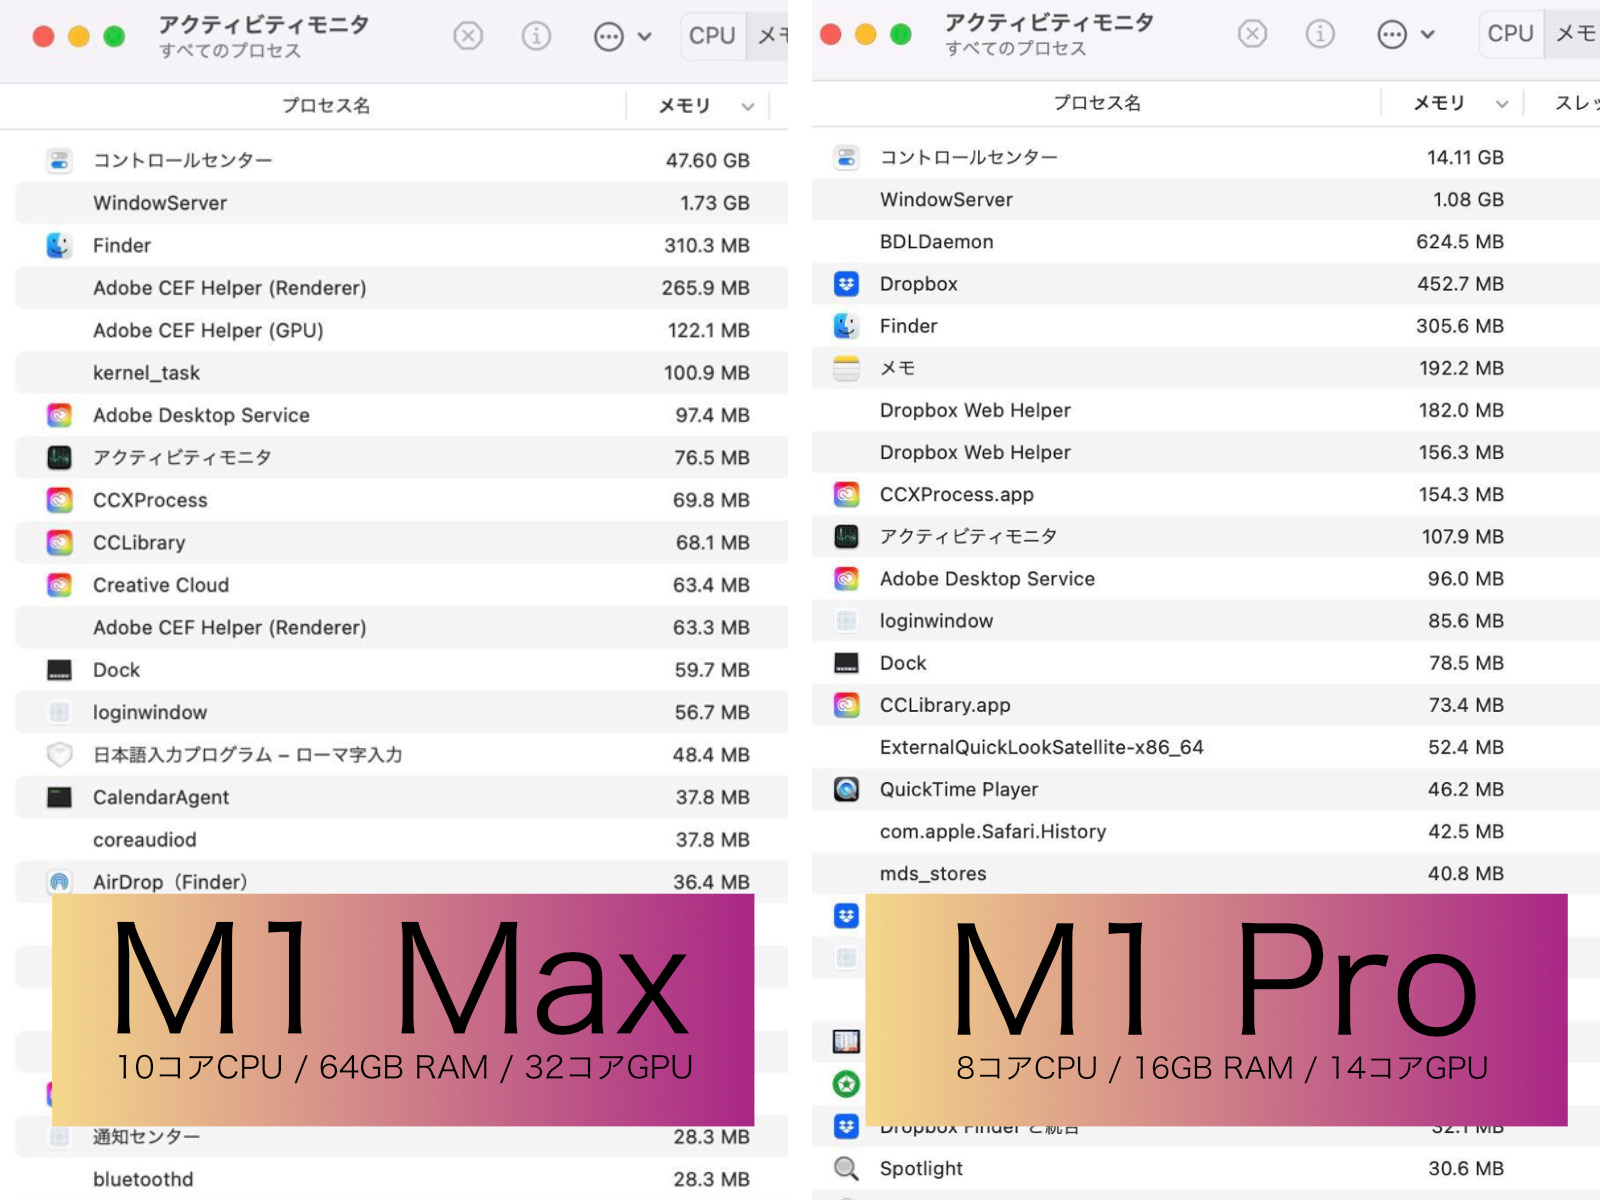 M1Max M1Pro Comparison